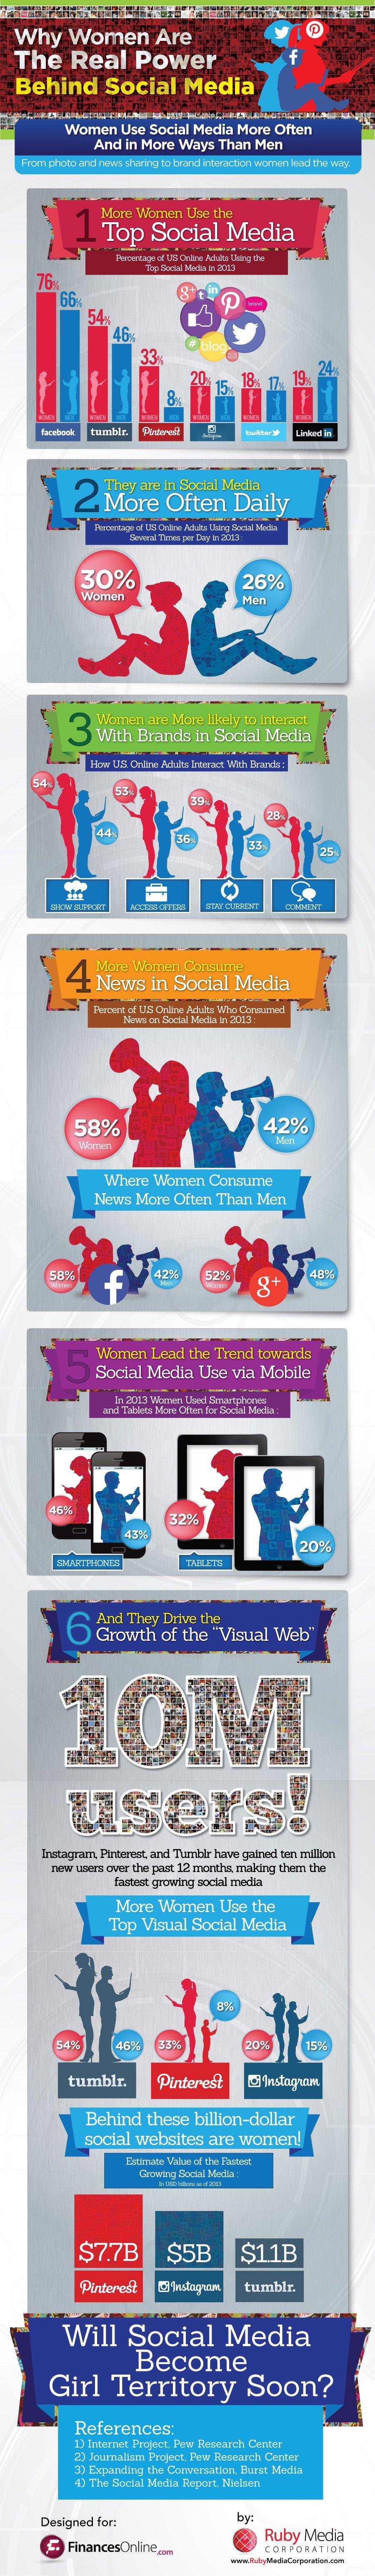 donne e social media